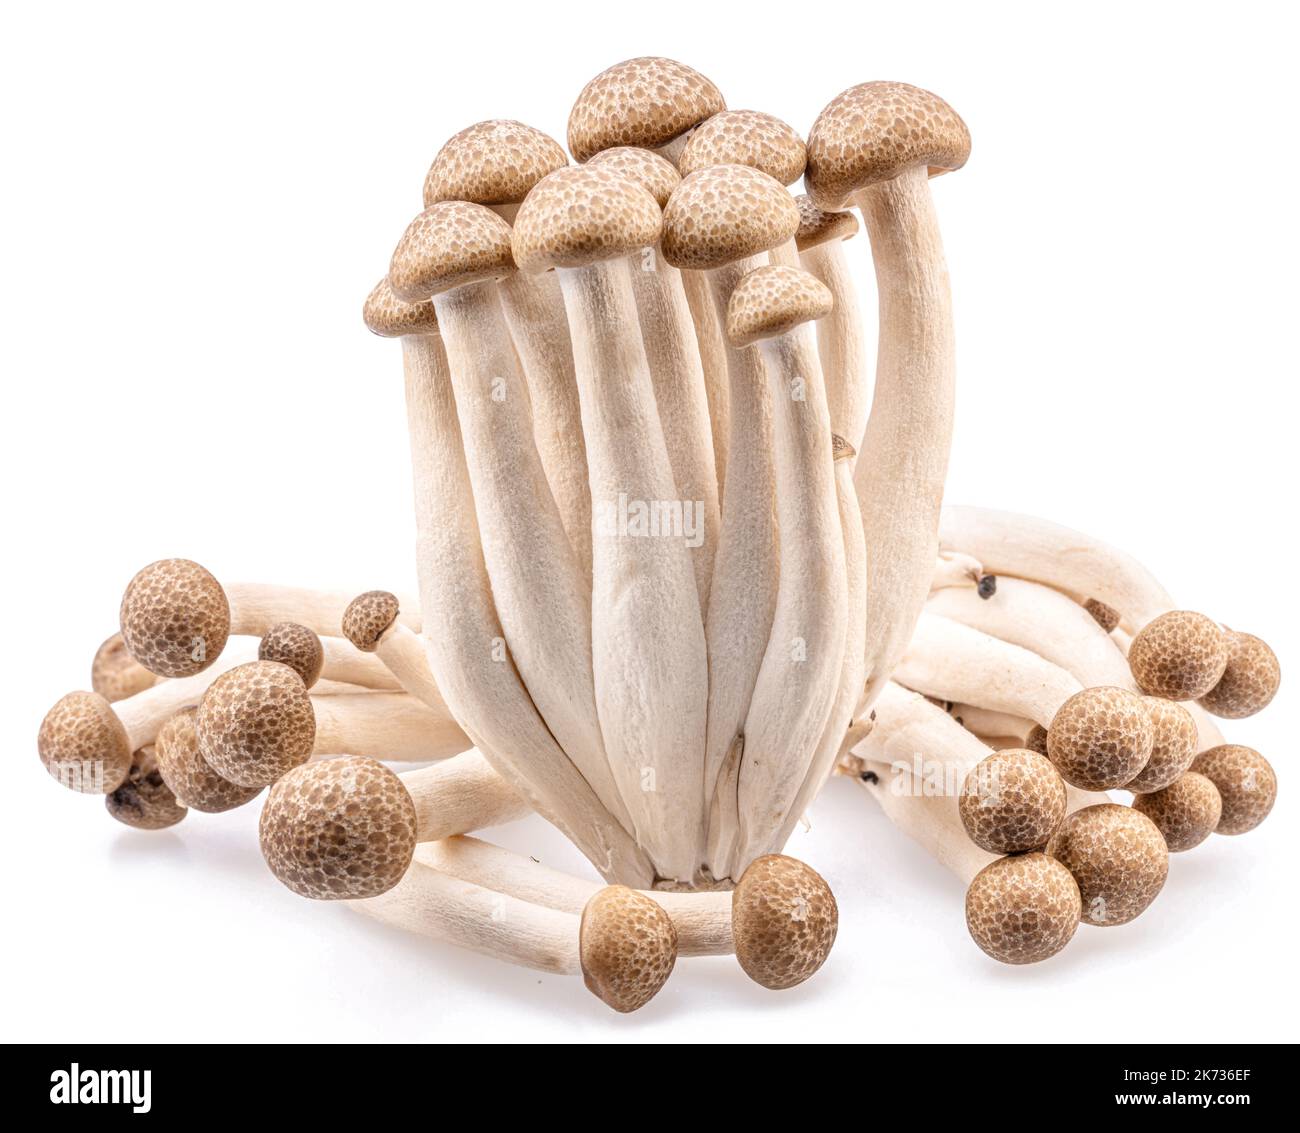 Cluster of hon shimeji edible japanese mushrooms isolated on white background. Close-up. Stock Photo